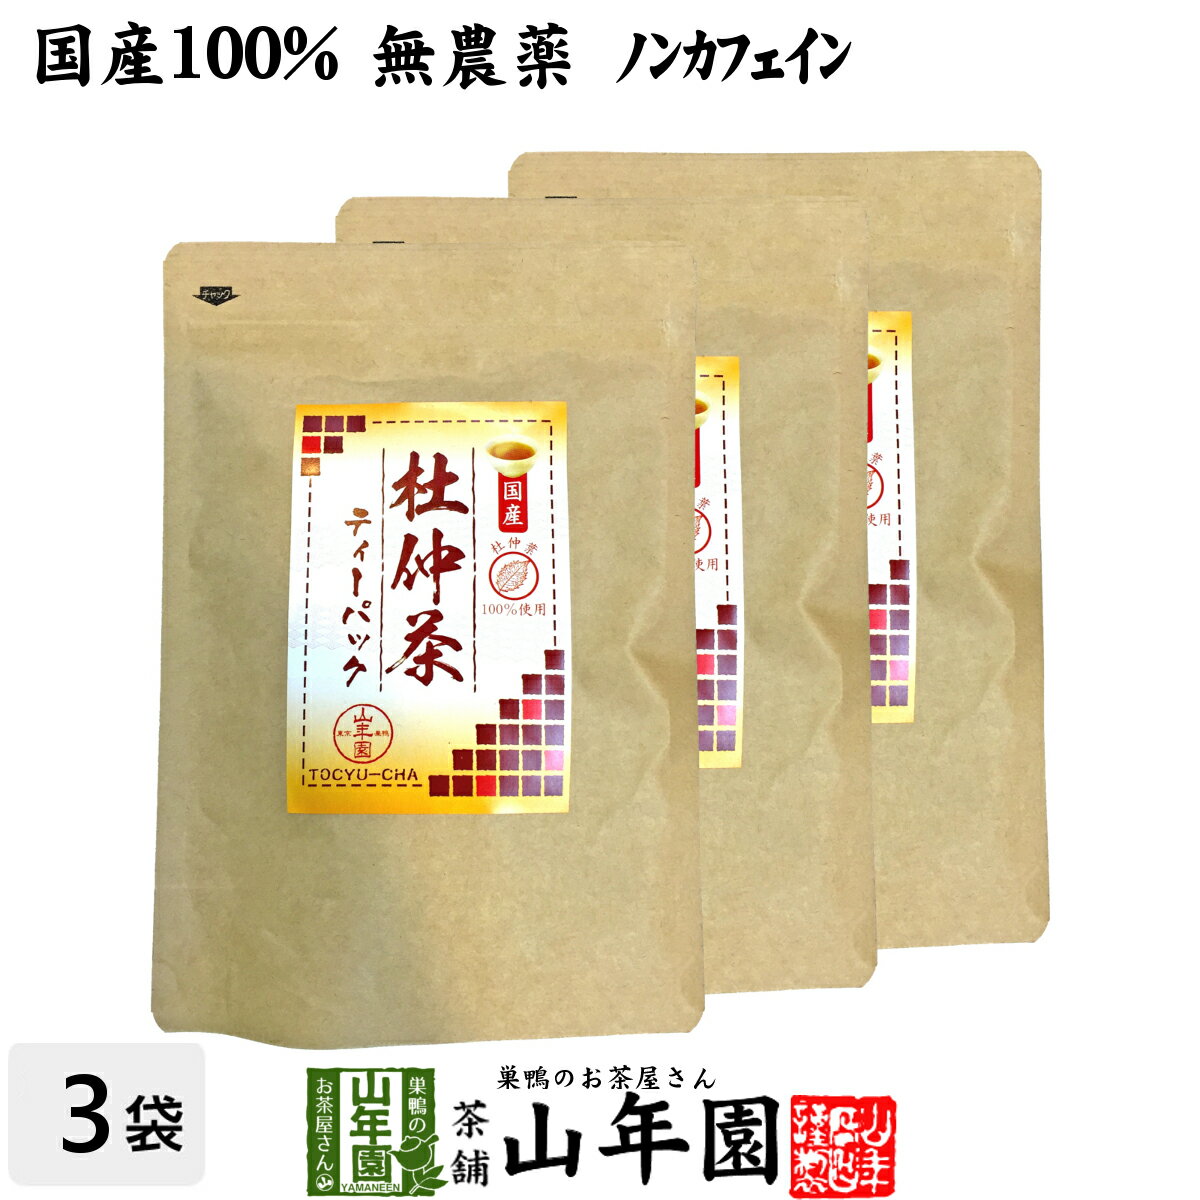 【熊本県のお土産】お茶・紅茶